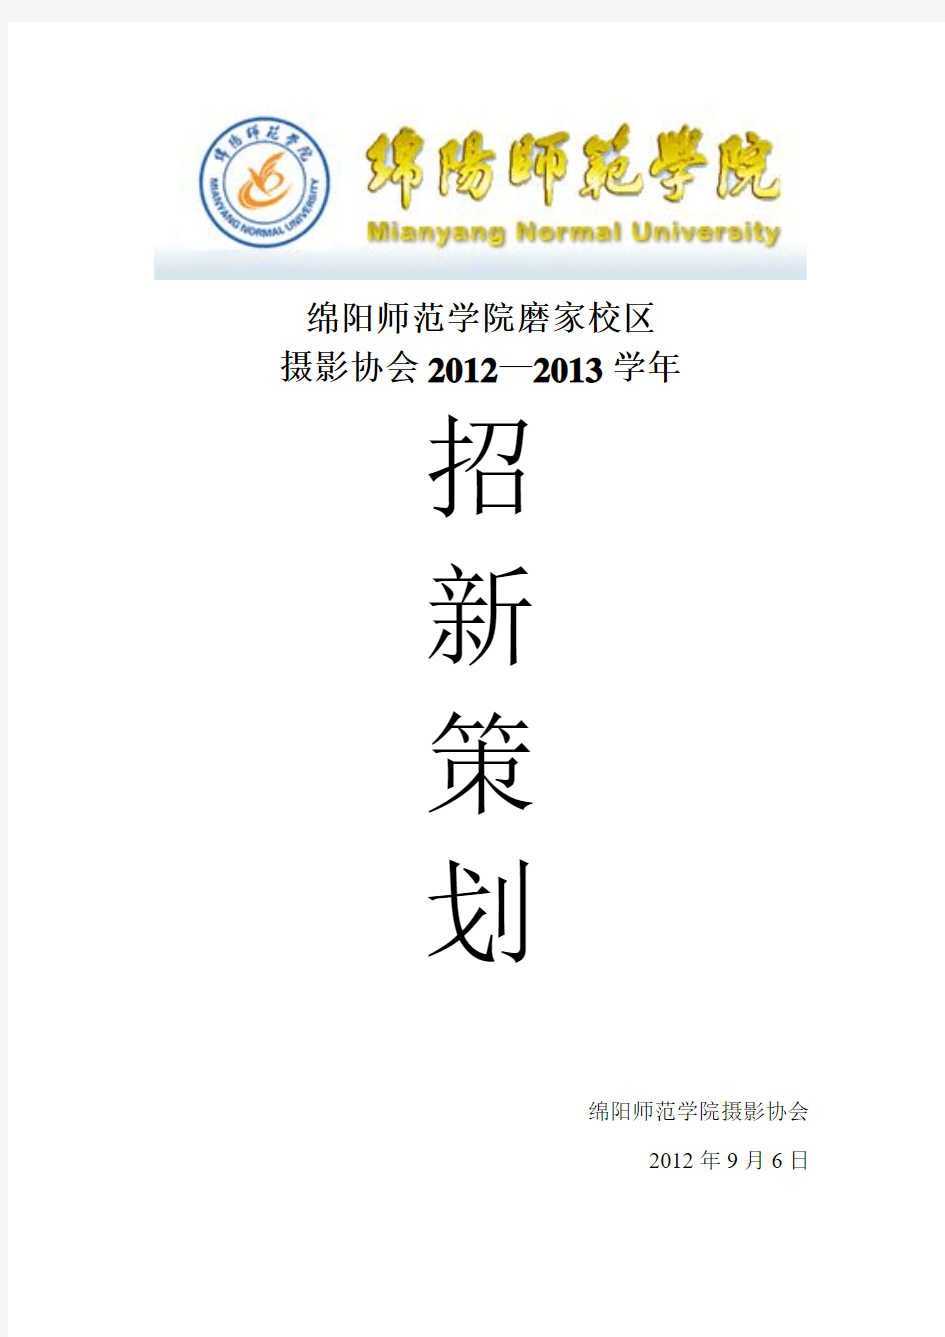 4、绵阳师范学院摄影协会20112—2013学年招新策划书